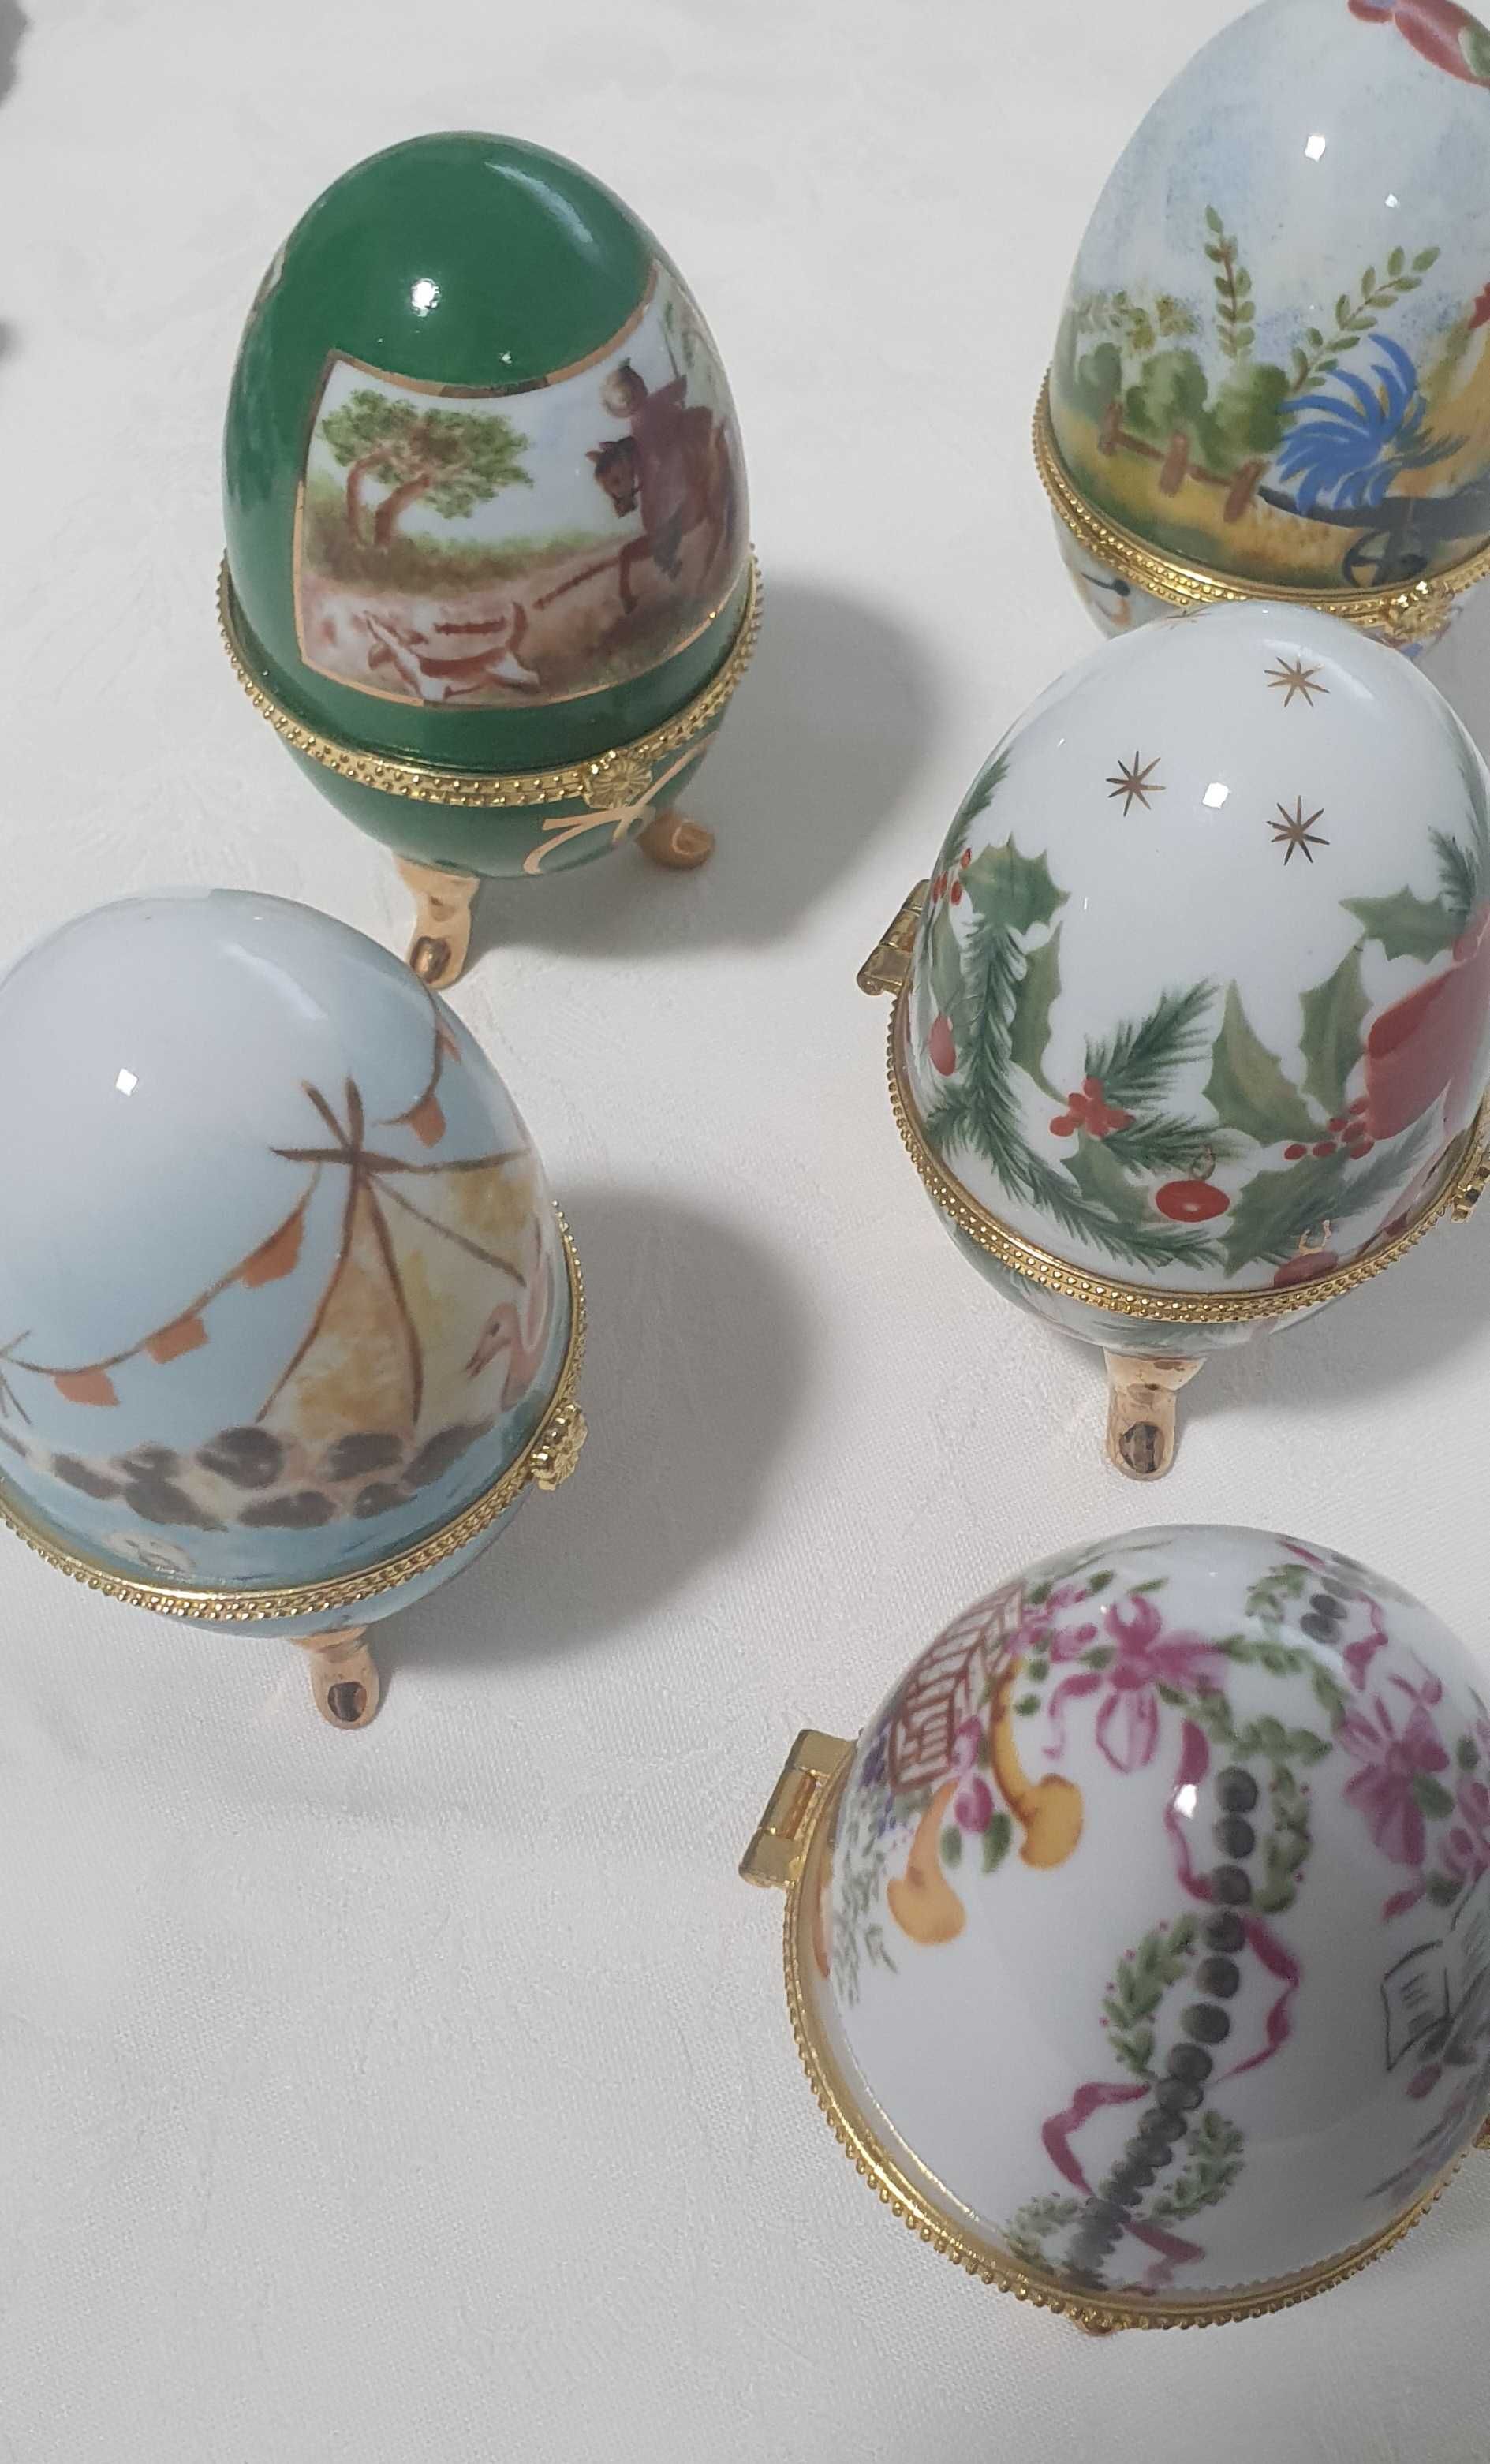 Ovos em porcelana - imitação fabergé